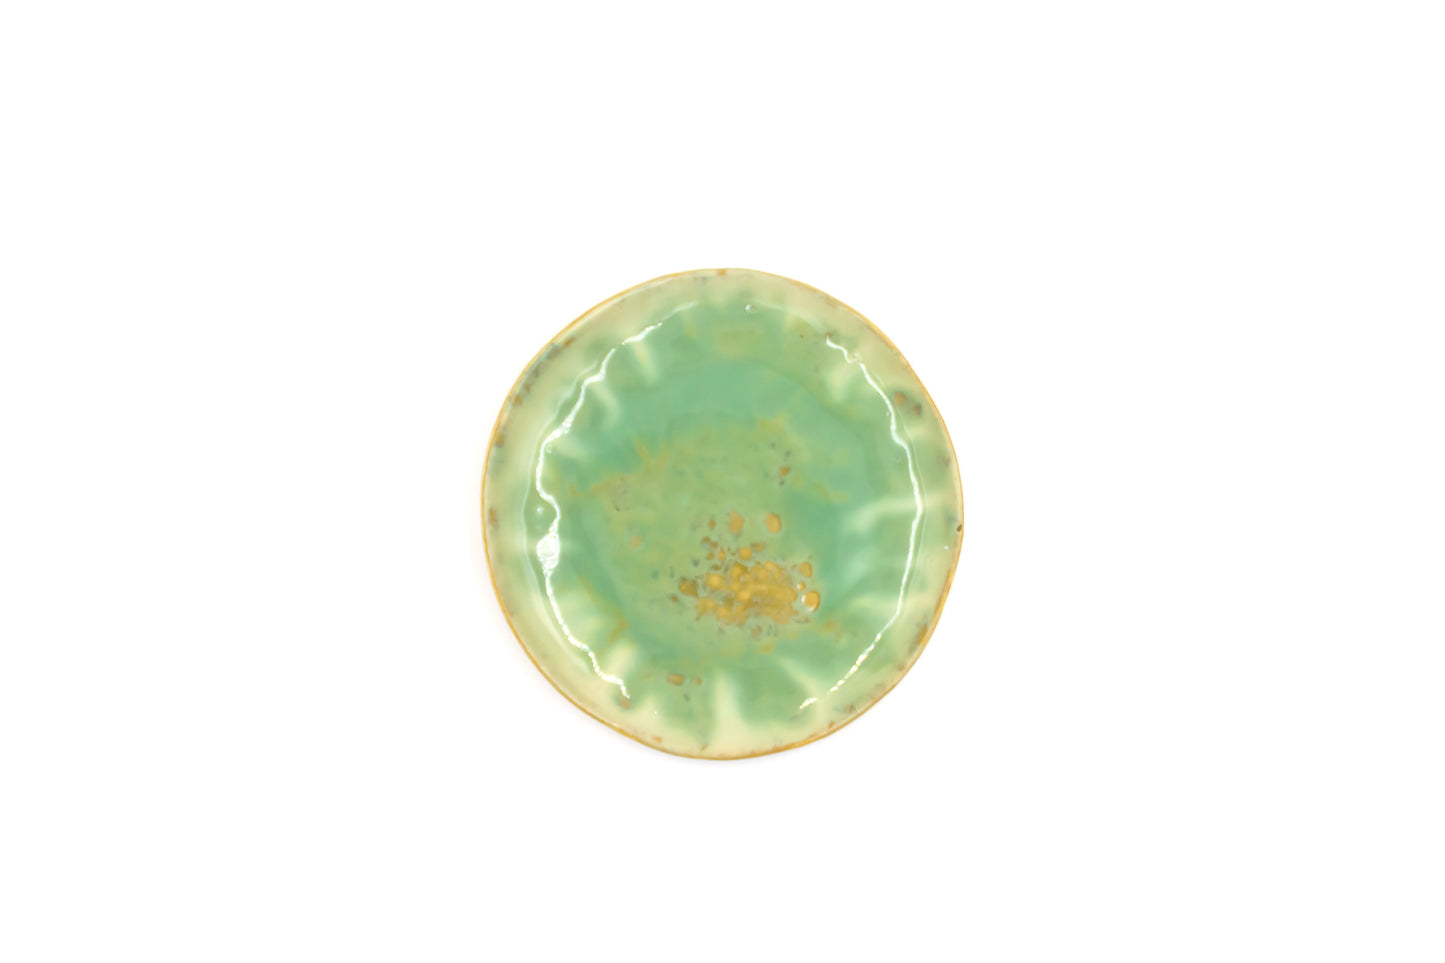 Talerz ceramiczny w kolorze beżowo-zielonym